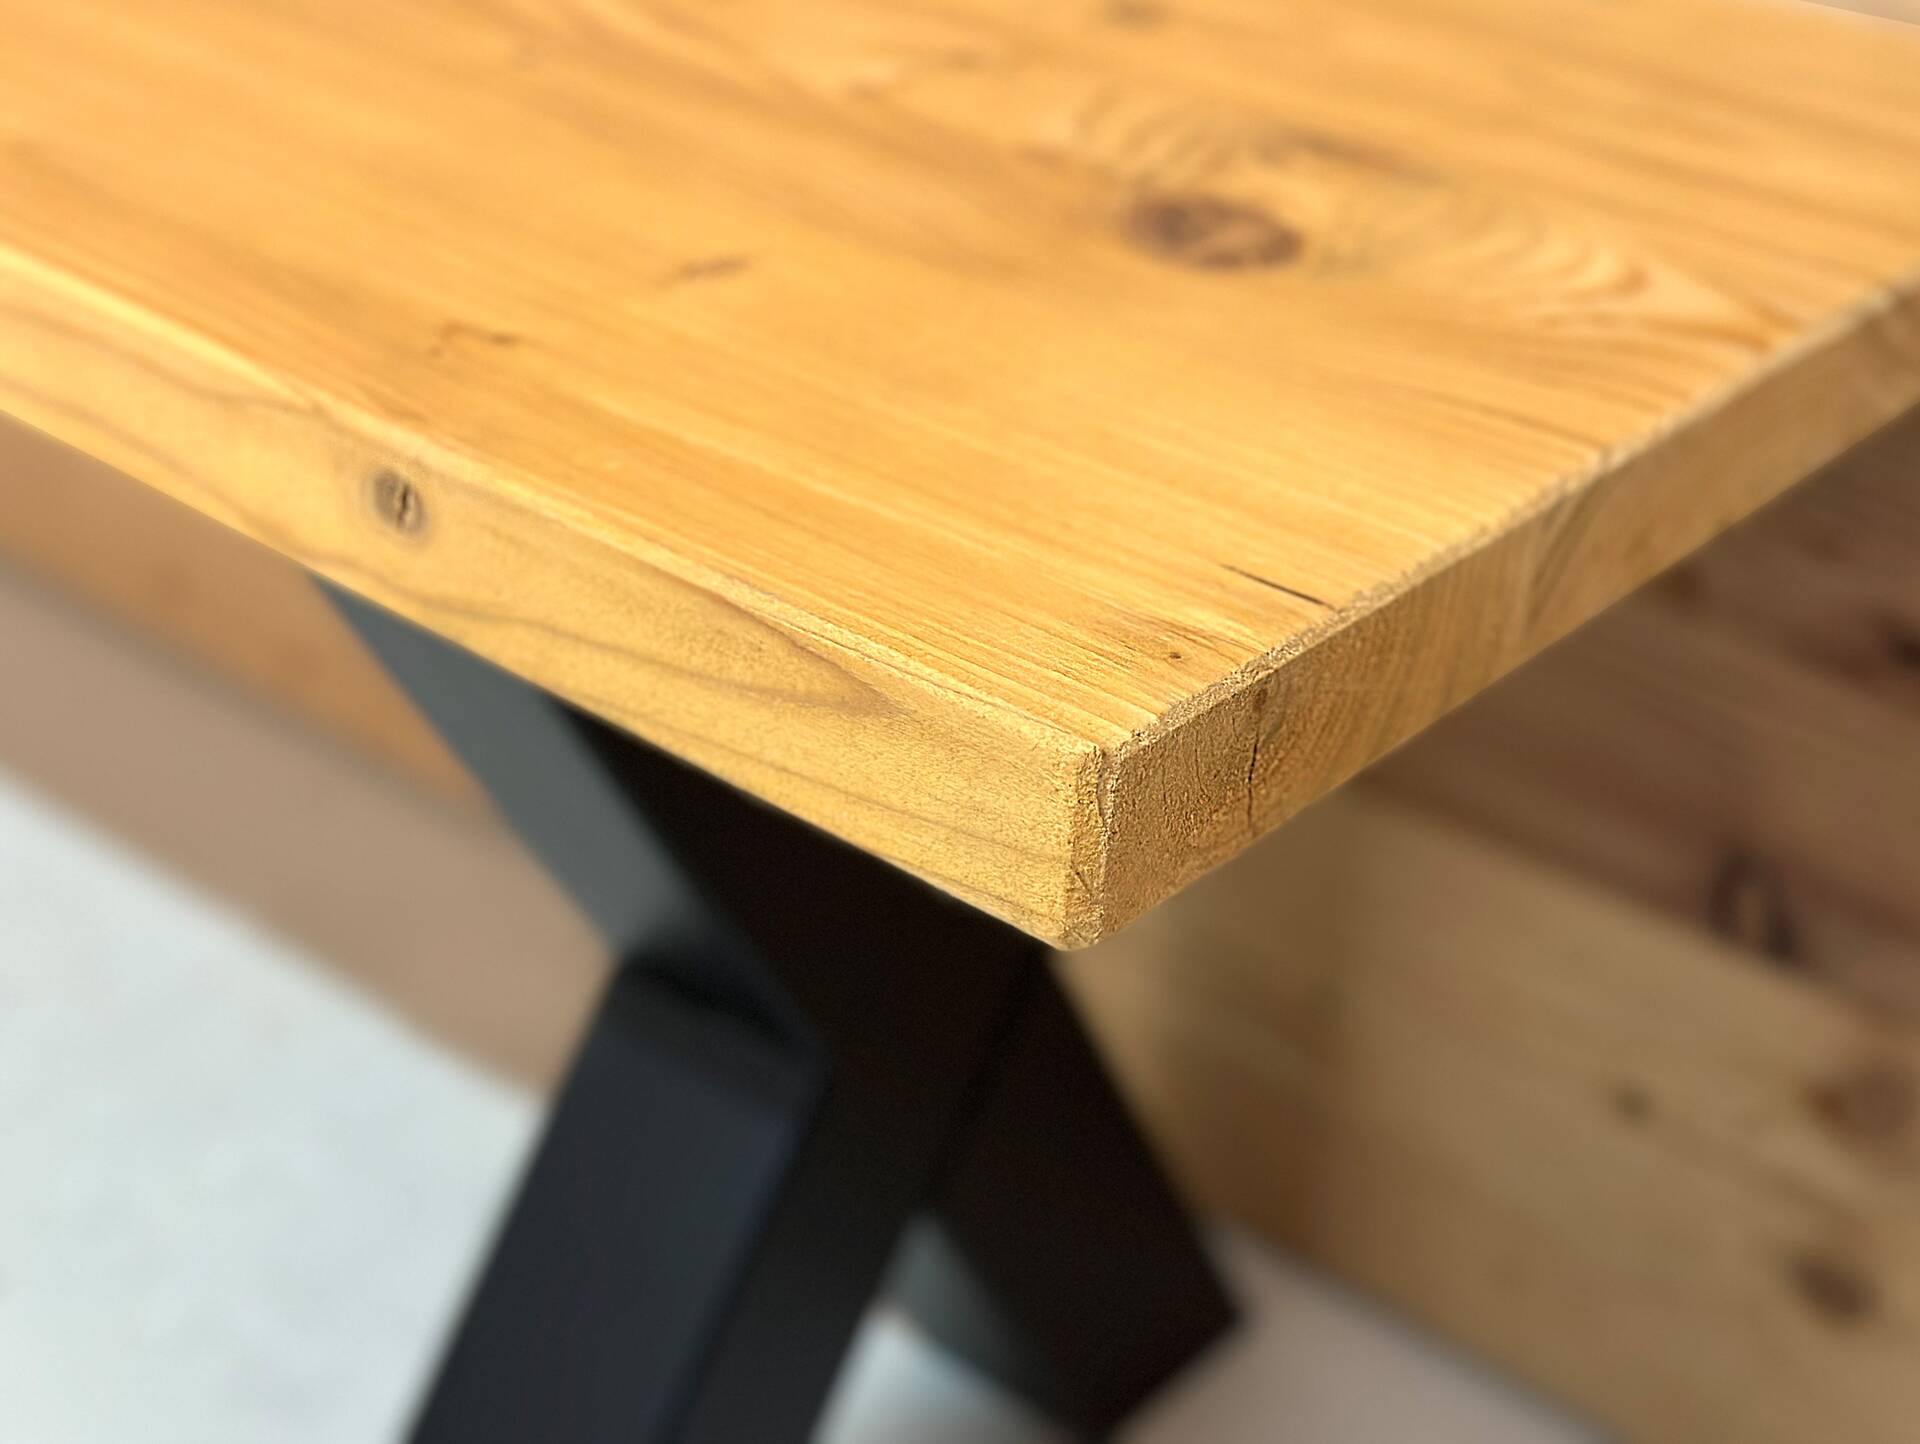 ALABAMA Sitzbank mit X-Beinen, Altholzoptik, Material Massivholz, THERMO-Fichte lackiert 240 cm | mit Rückenlehne | natur